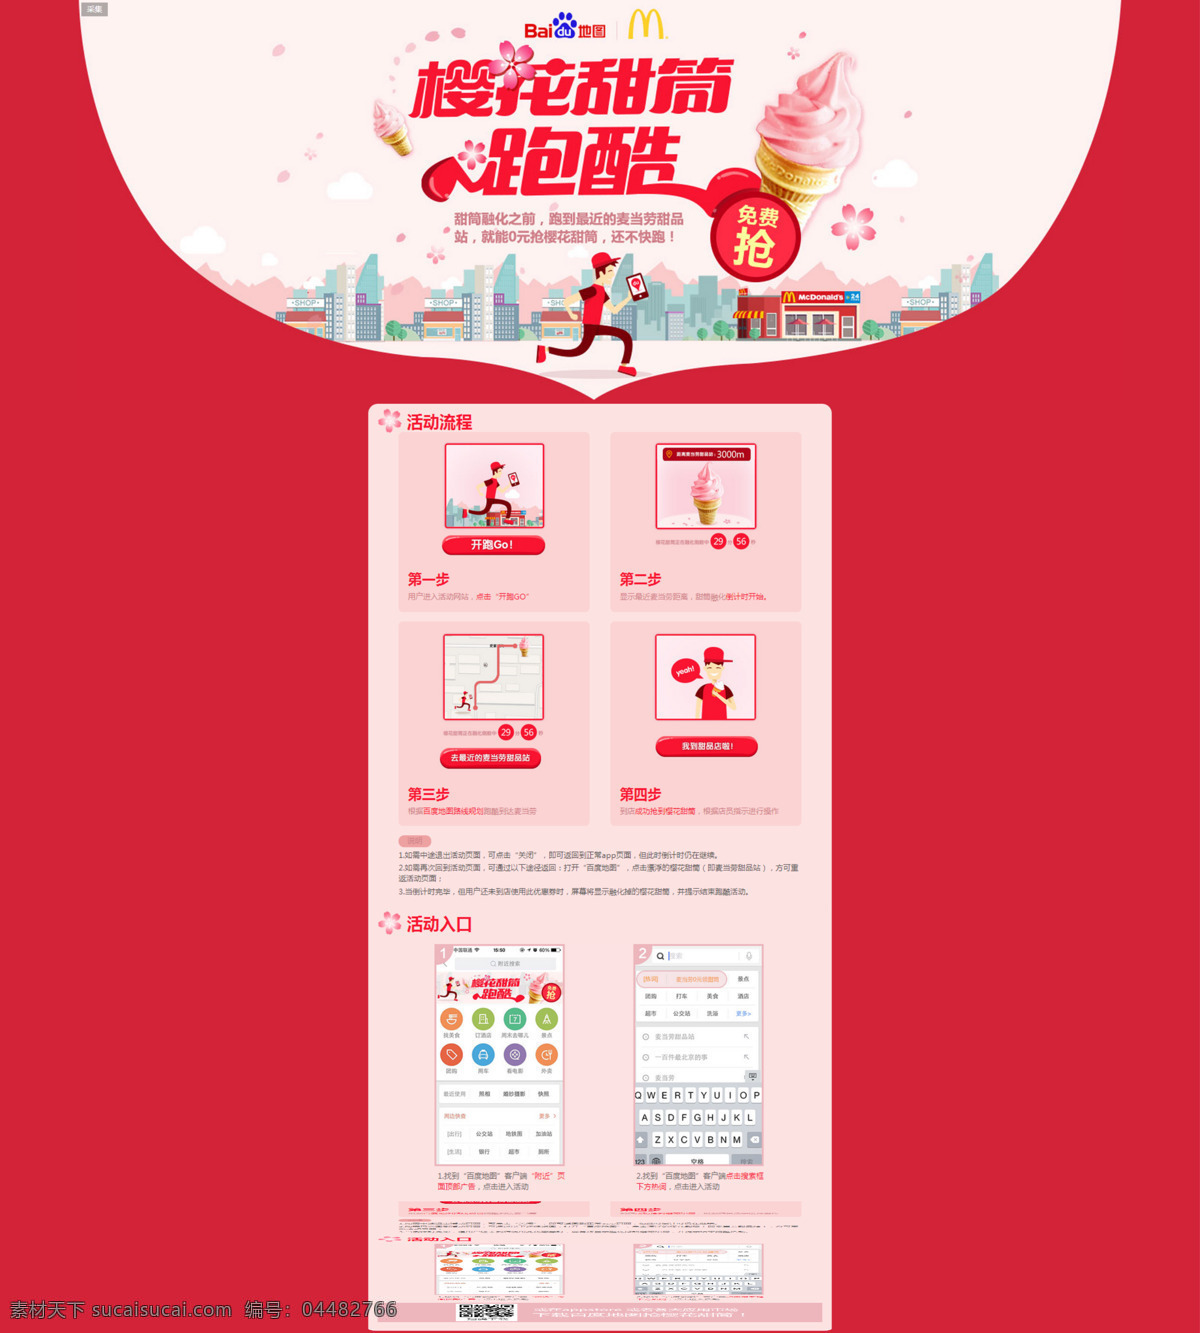 樱花 甜筒 促销活动 海报 图 樱花甜筒 麦当劳 灵感素材下载 红色